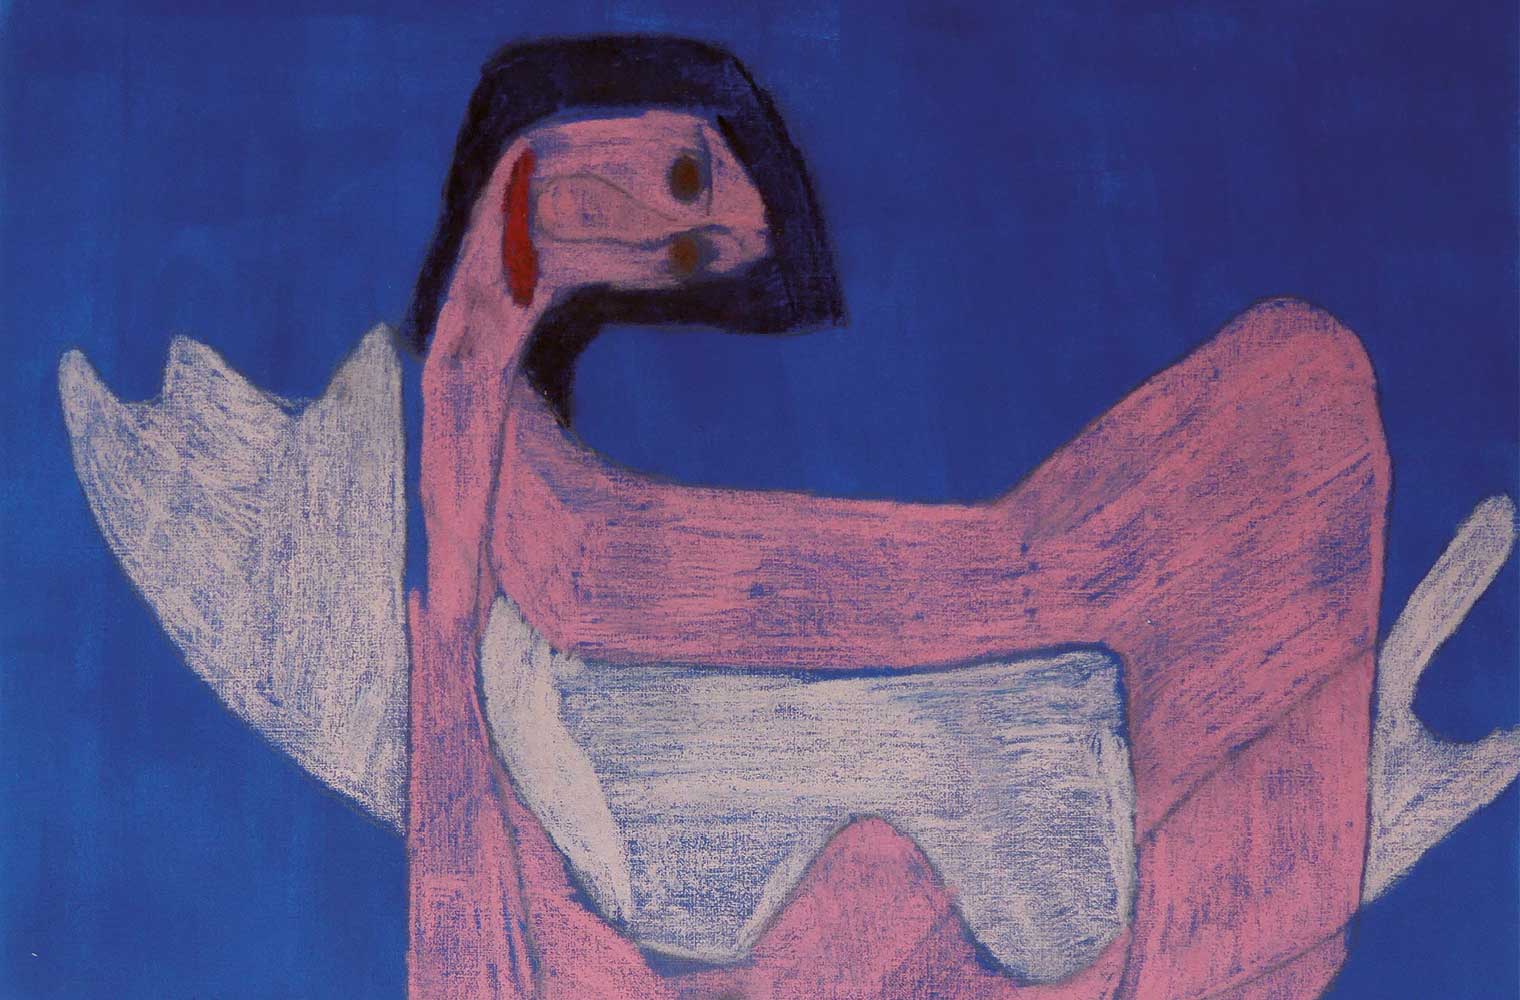 Eine gemaltes Bild: Eine abstrakte Person mit rosa Hautfarbe und reißen abstrakten Händen. Der Kopf wird nach hinten geneigt.